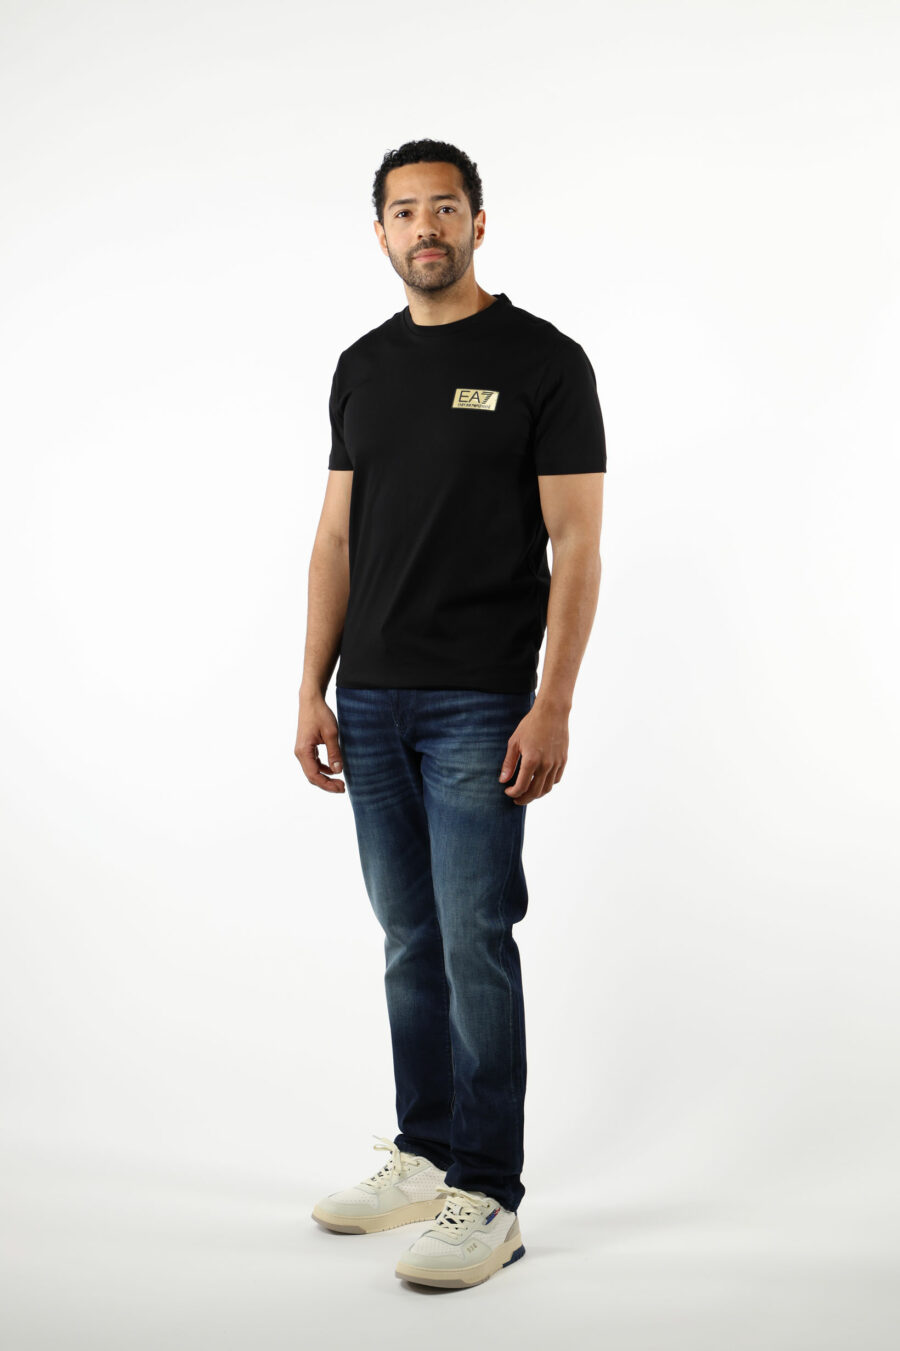 T-shirt noir avec minilogue "lux identity" noir sur plaque d'or - 110812